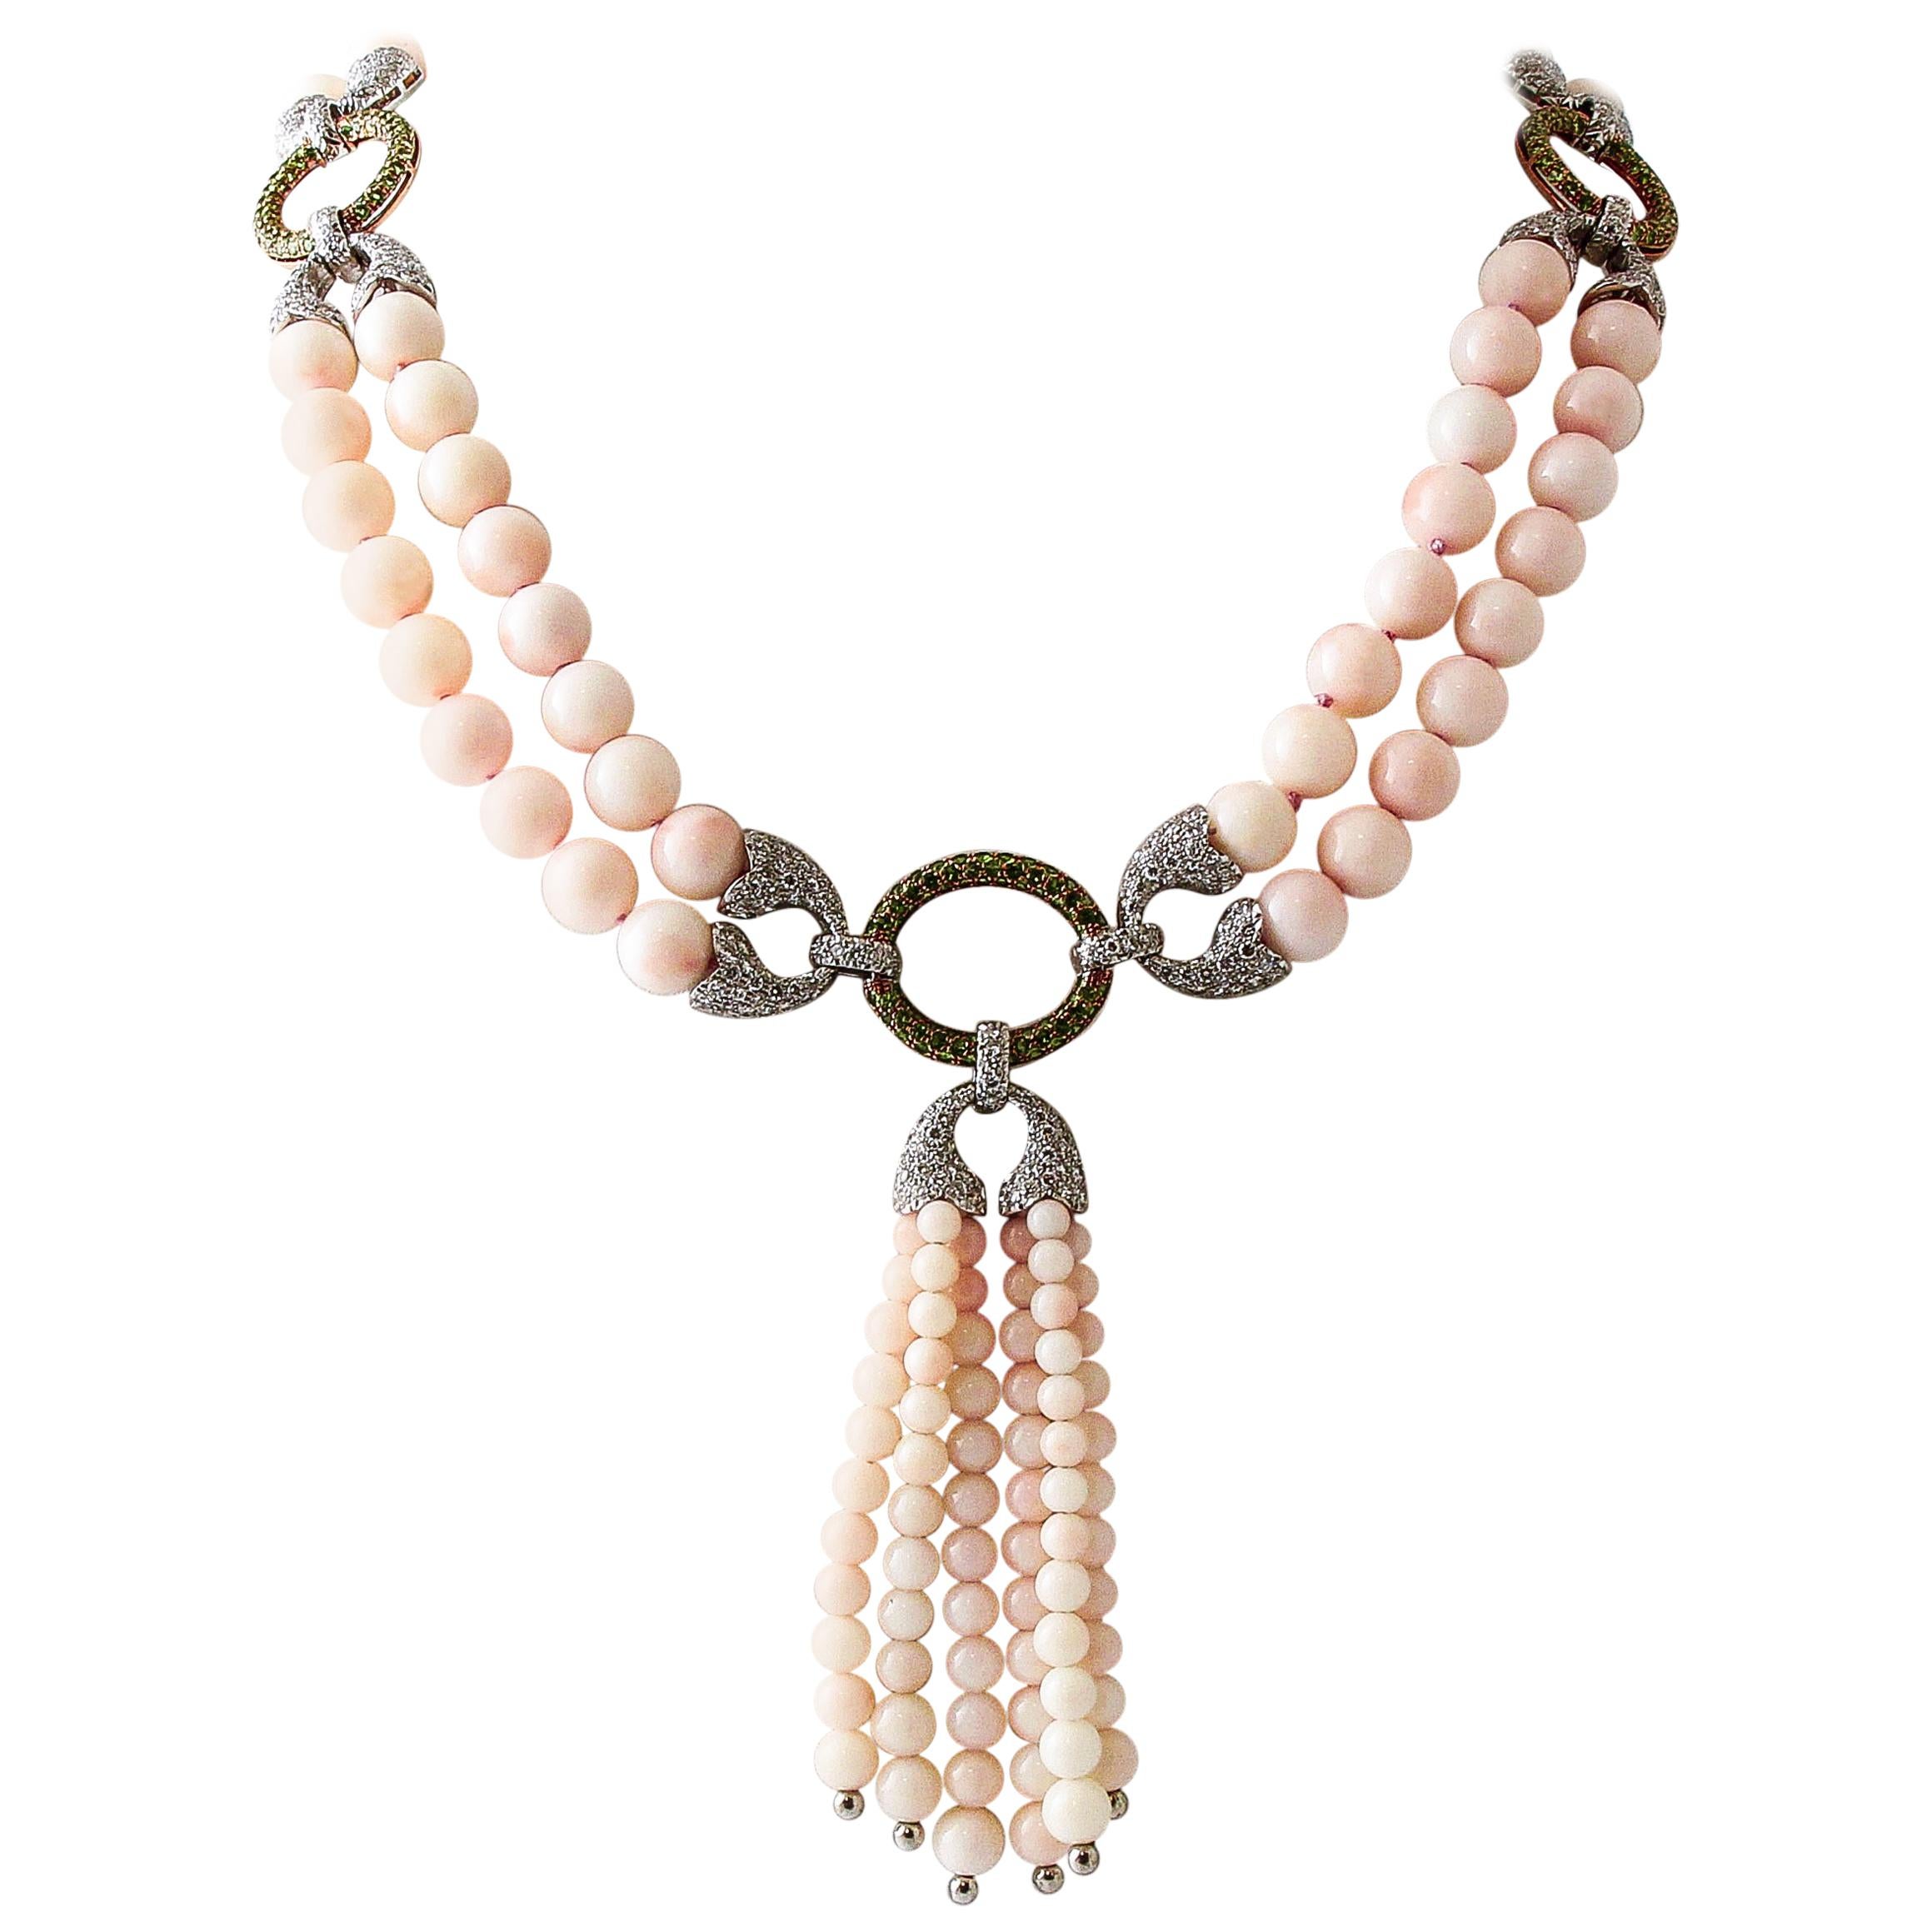 Collier perlé en or blanc et rose, diamants, tsavorites, sphères de corail rose